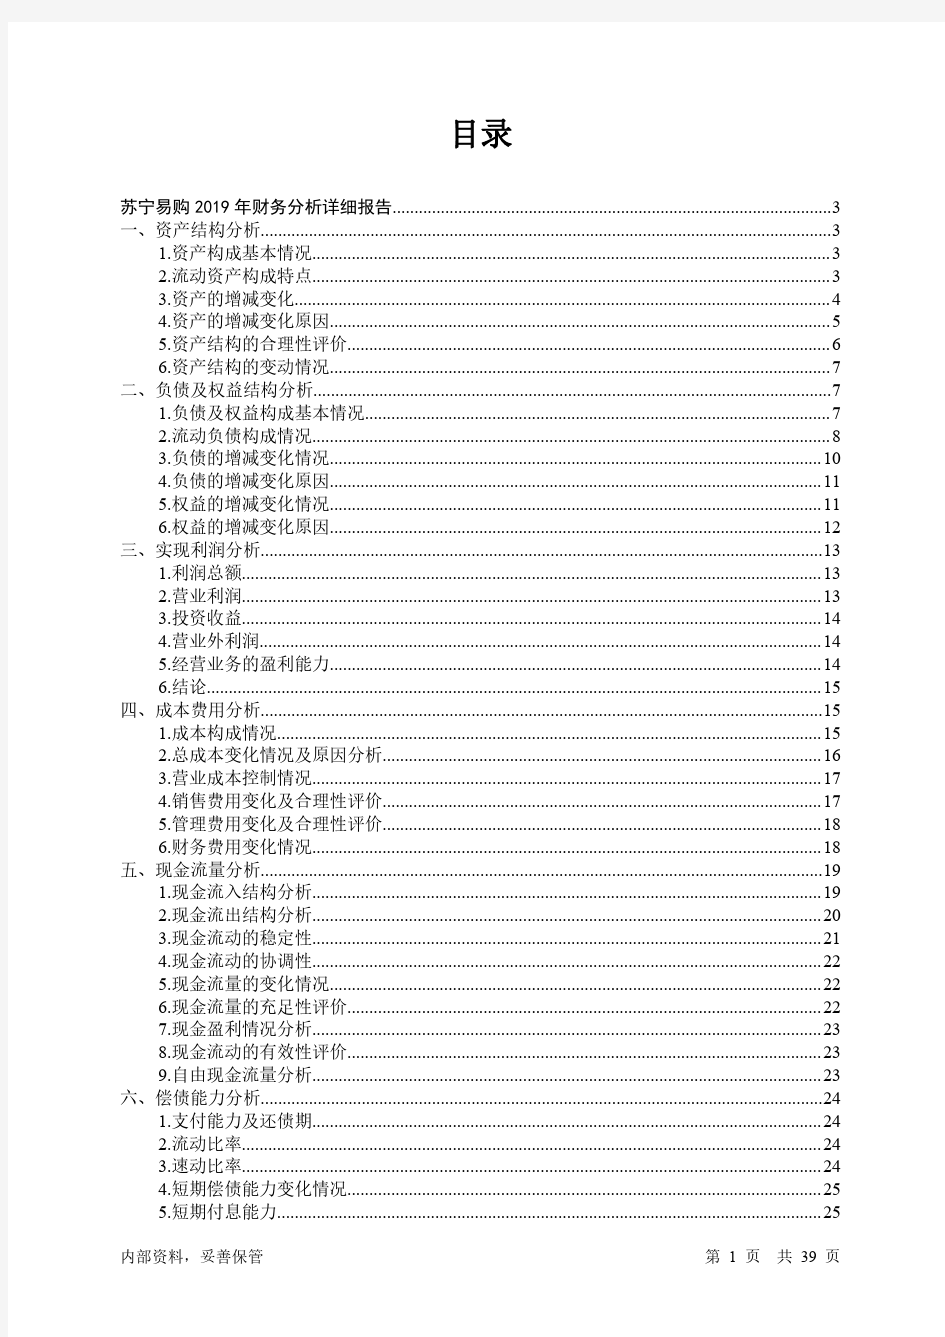 苏宁易购2019年财务分析详细报告-智泽华